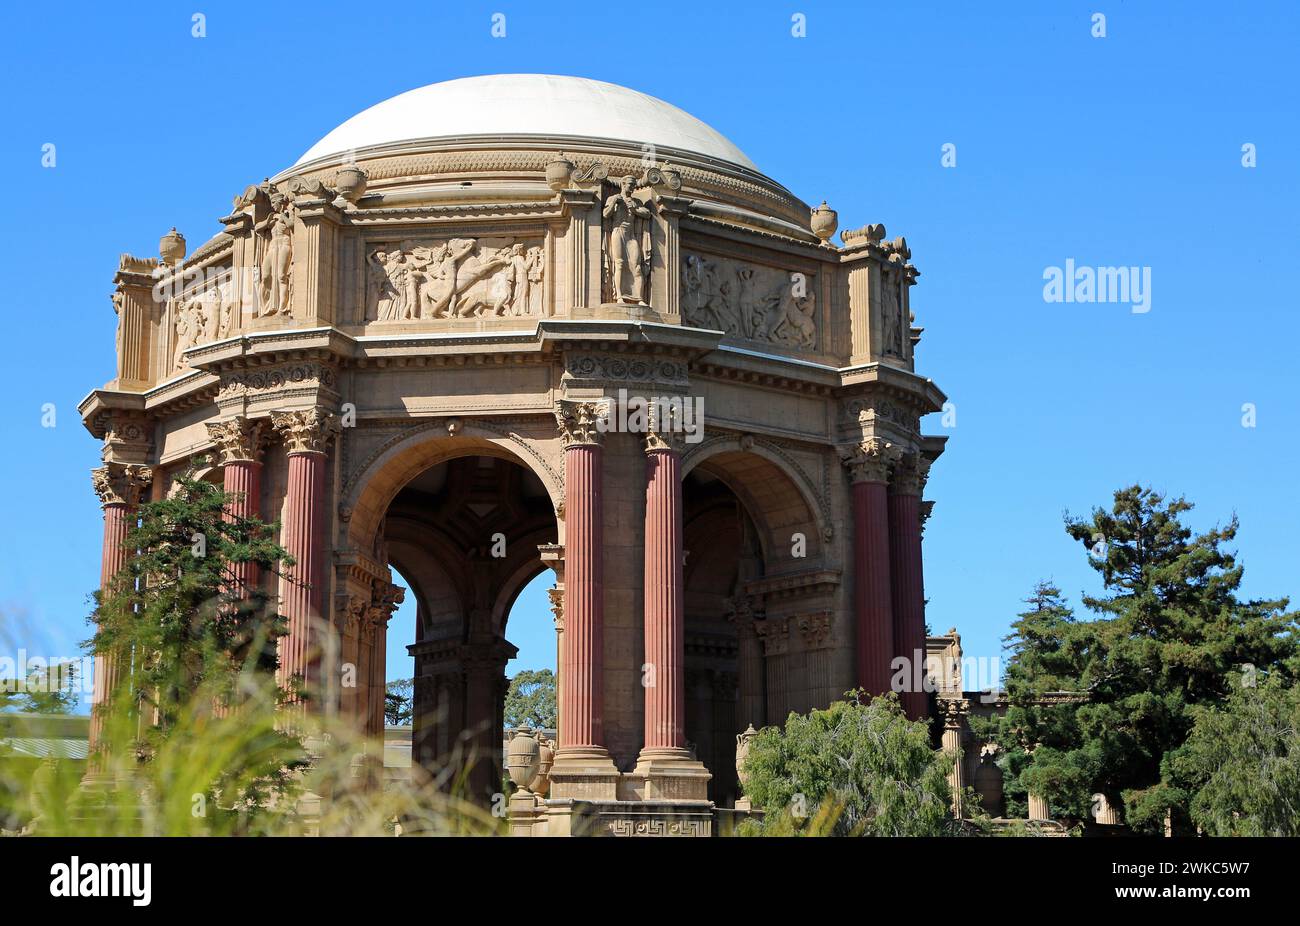 The rotunda of The Palace of Fine Arts, San Francisco, California Stock Photo